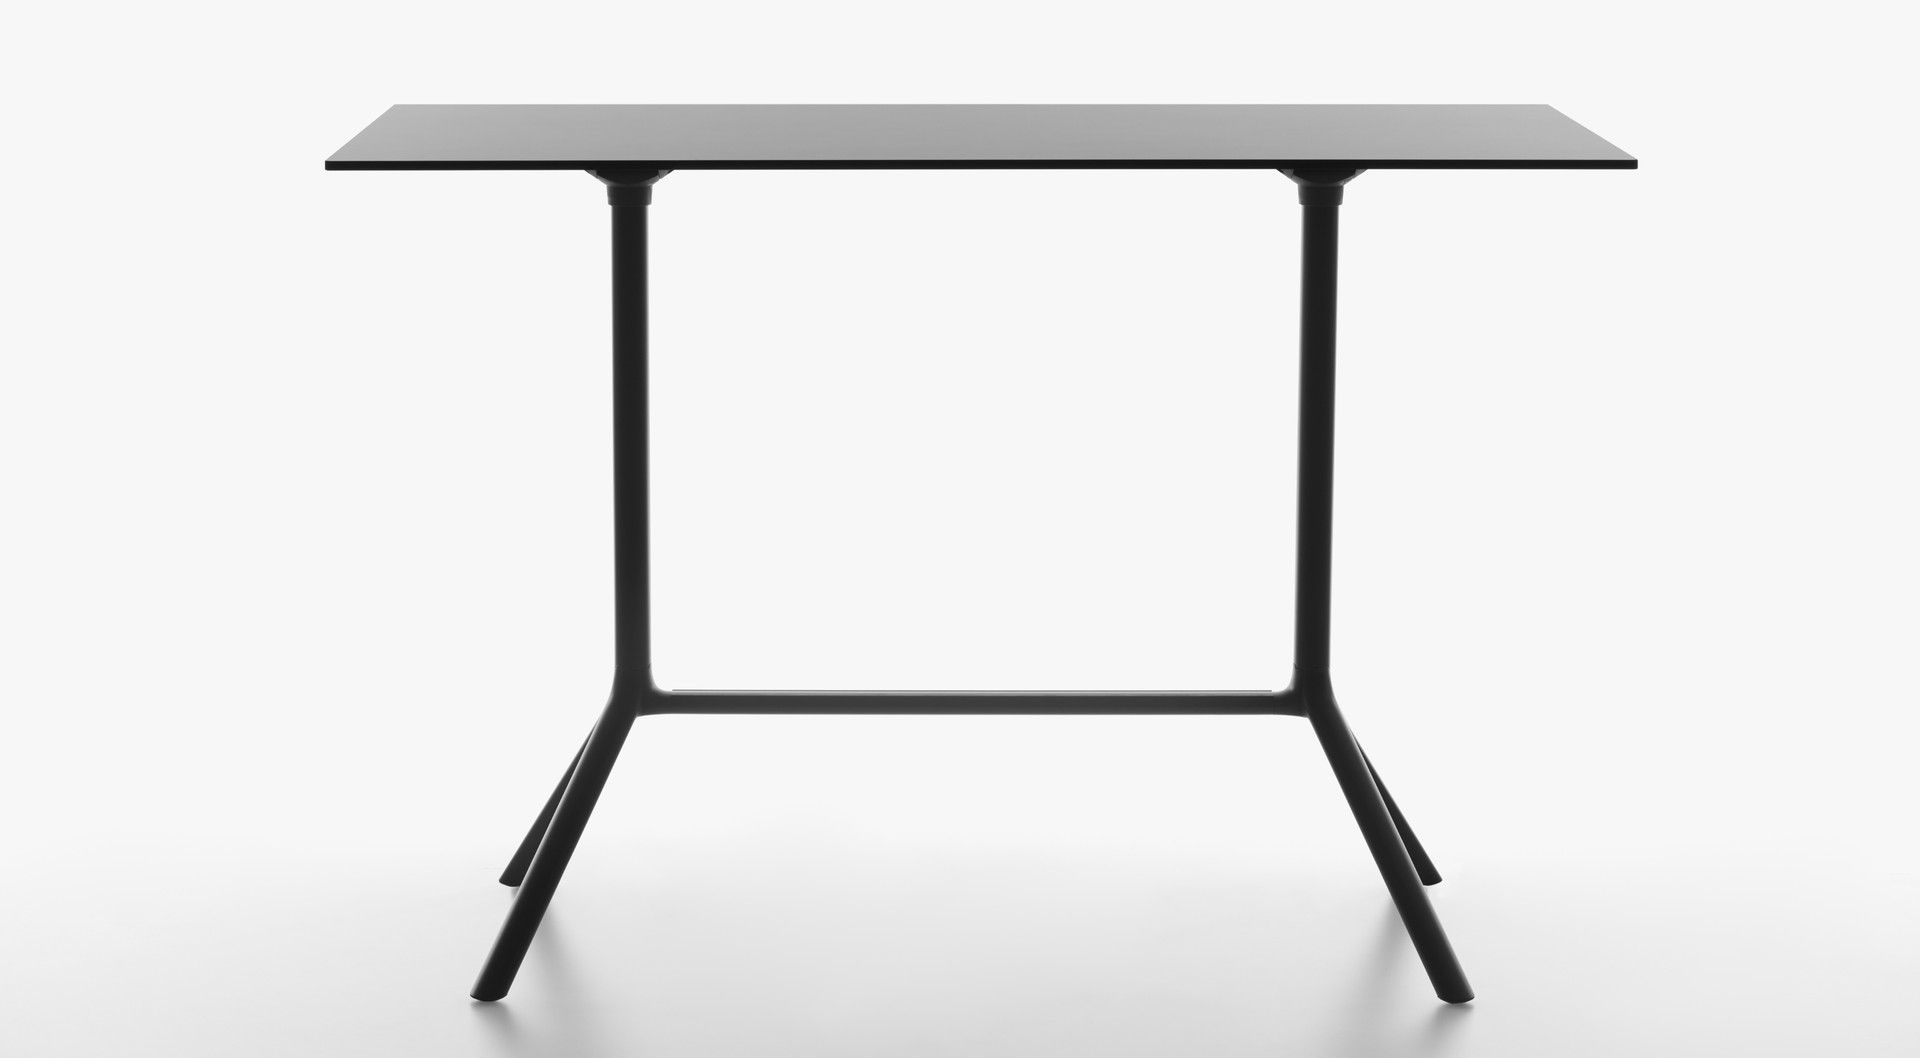 PLANK - Sklopný obdélníkový barový stůl MIURA - 